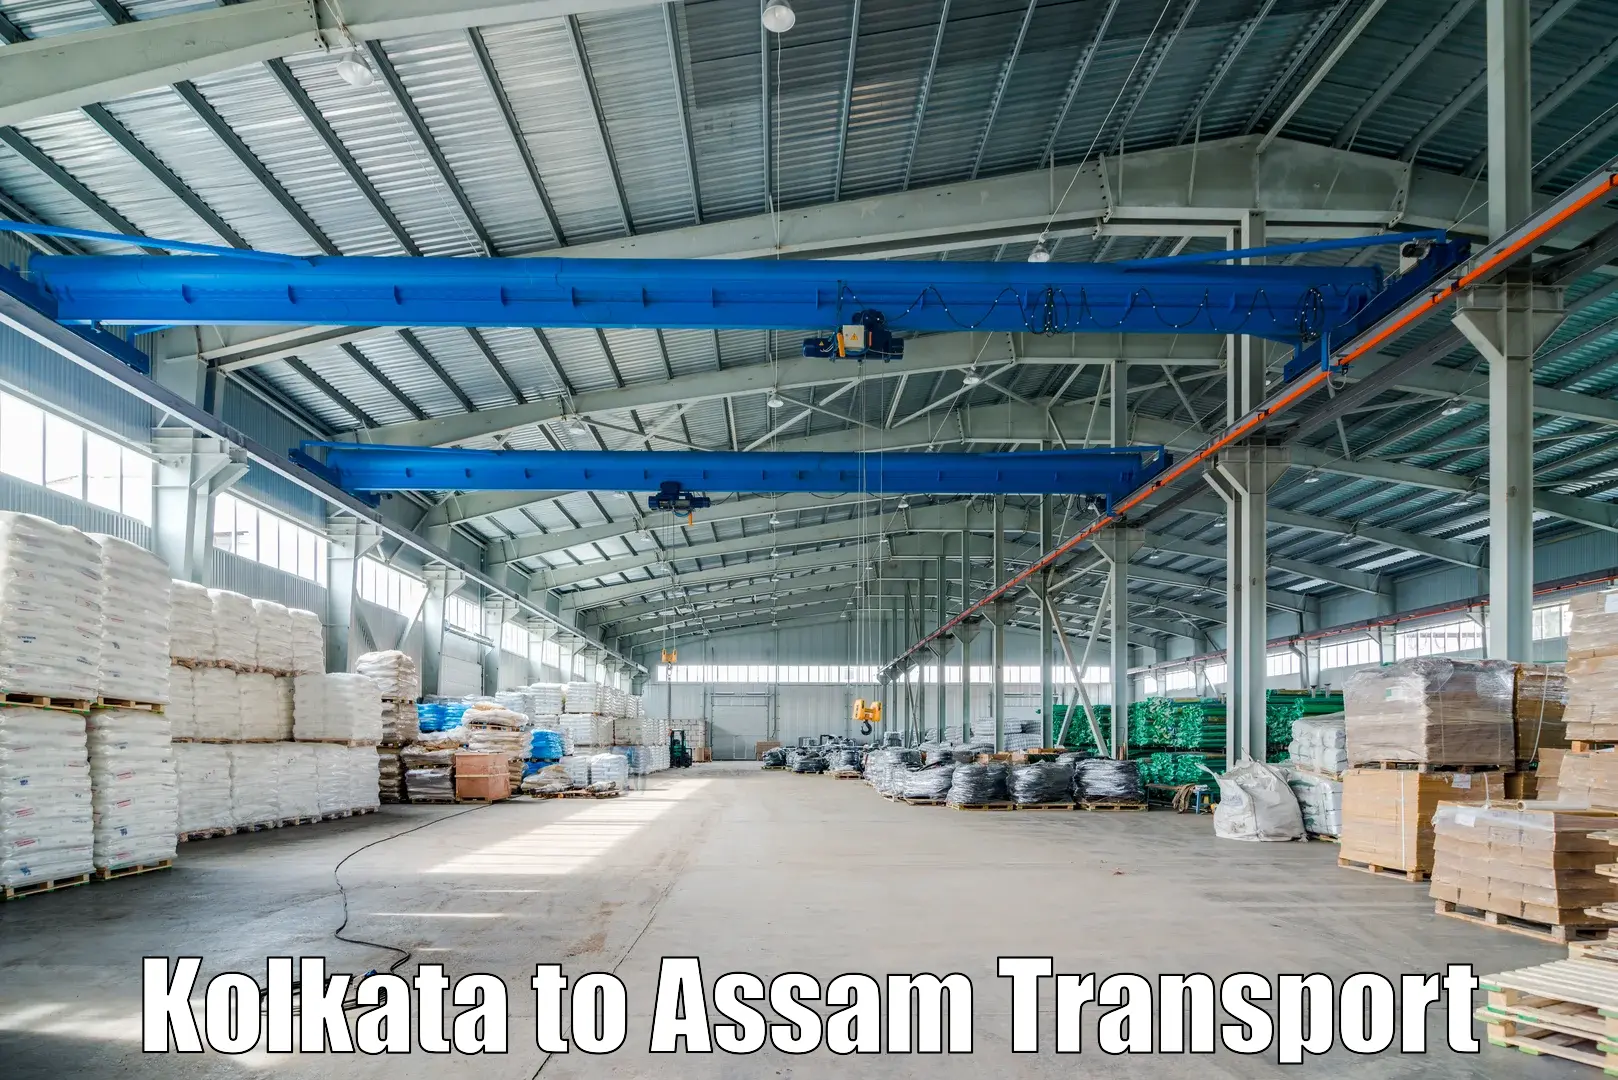 Nearest transport service Kolkata to Bamunimaidan